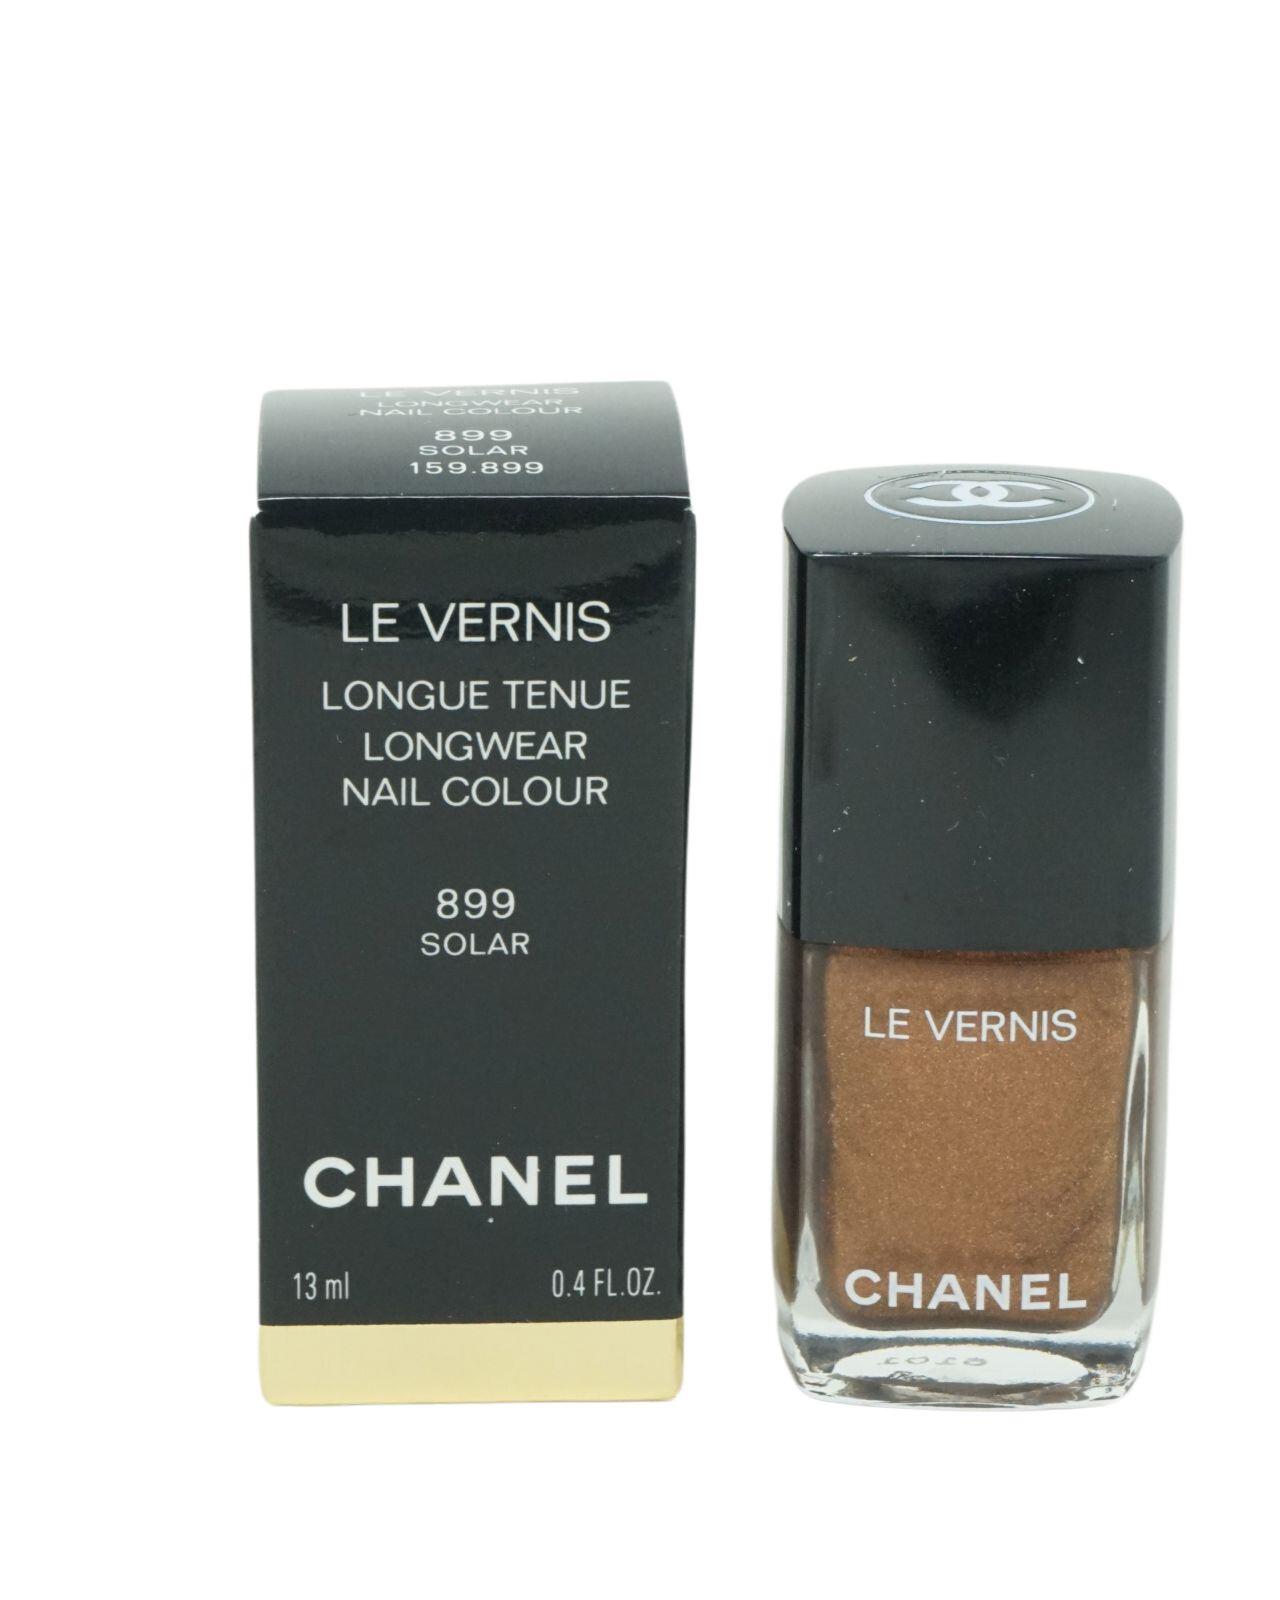 Chanel Le Vernis Longwear Nagellack 13ml 899 Solar